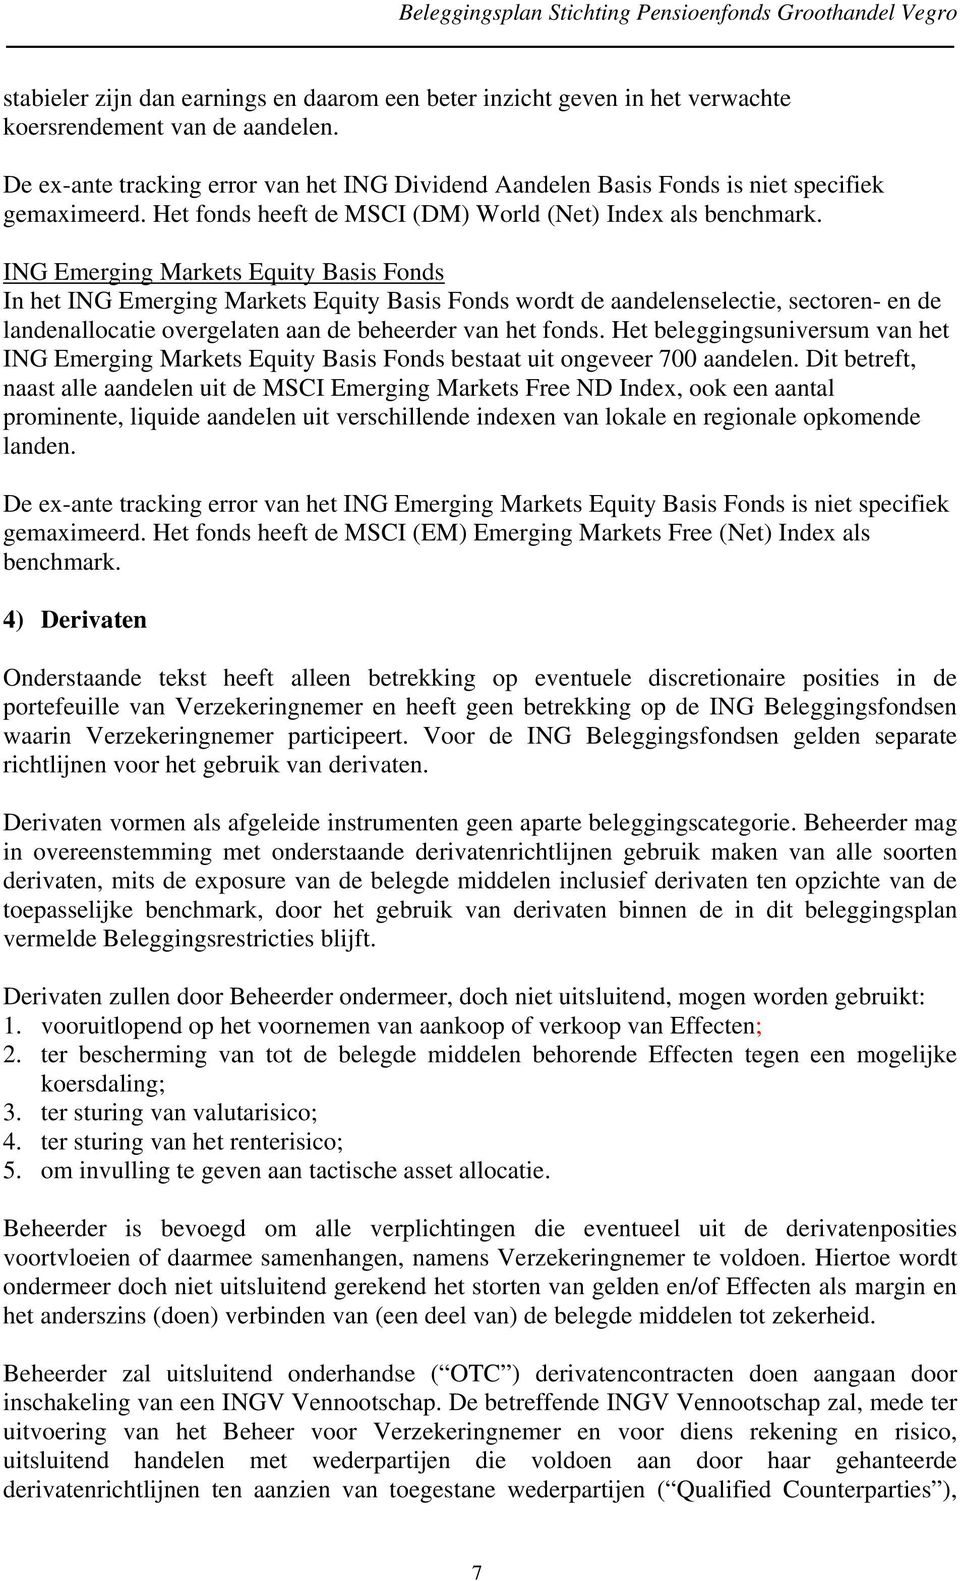 ING Emerging Markets Equity Basis Fonds In het ING Emerging Markets Equity Basis Fonds wordt de aandelenselectie, sectoren- en de landenallocatie overgelaten aan de beheerder van het fonds.